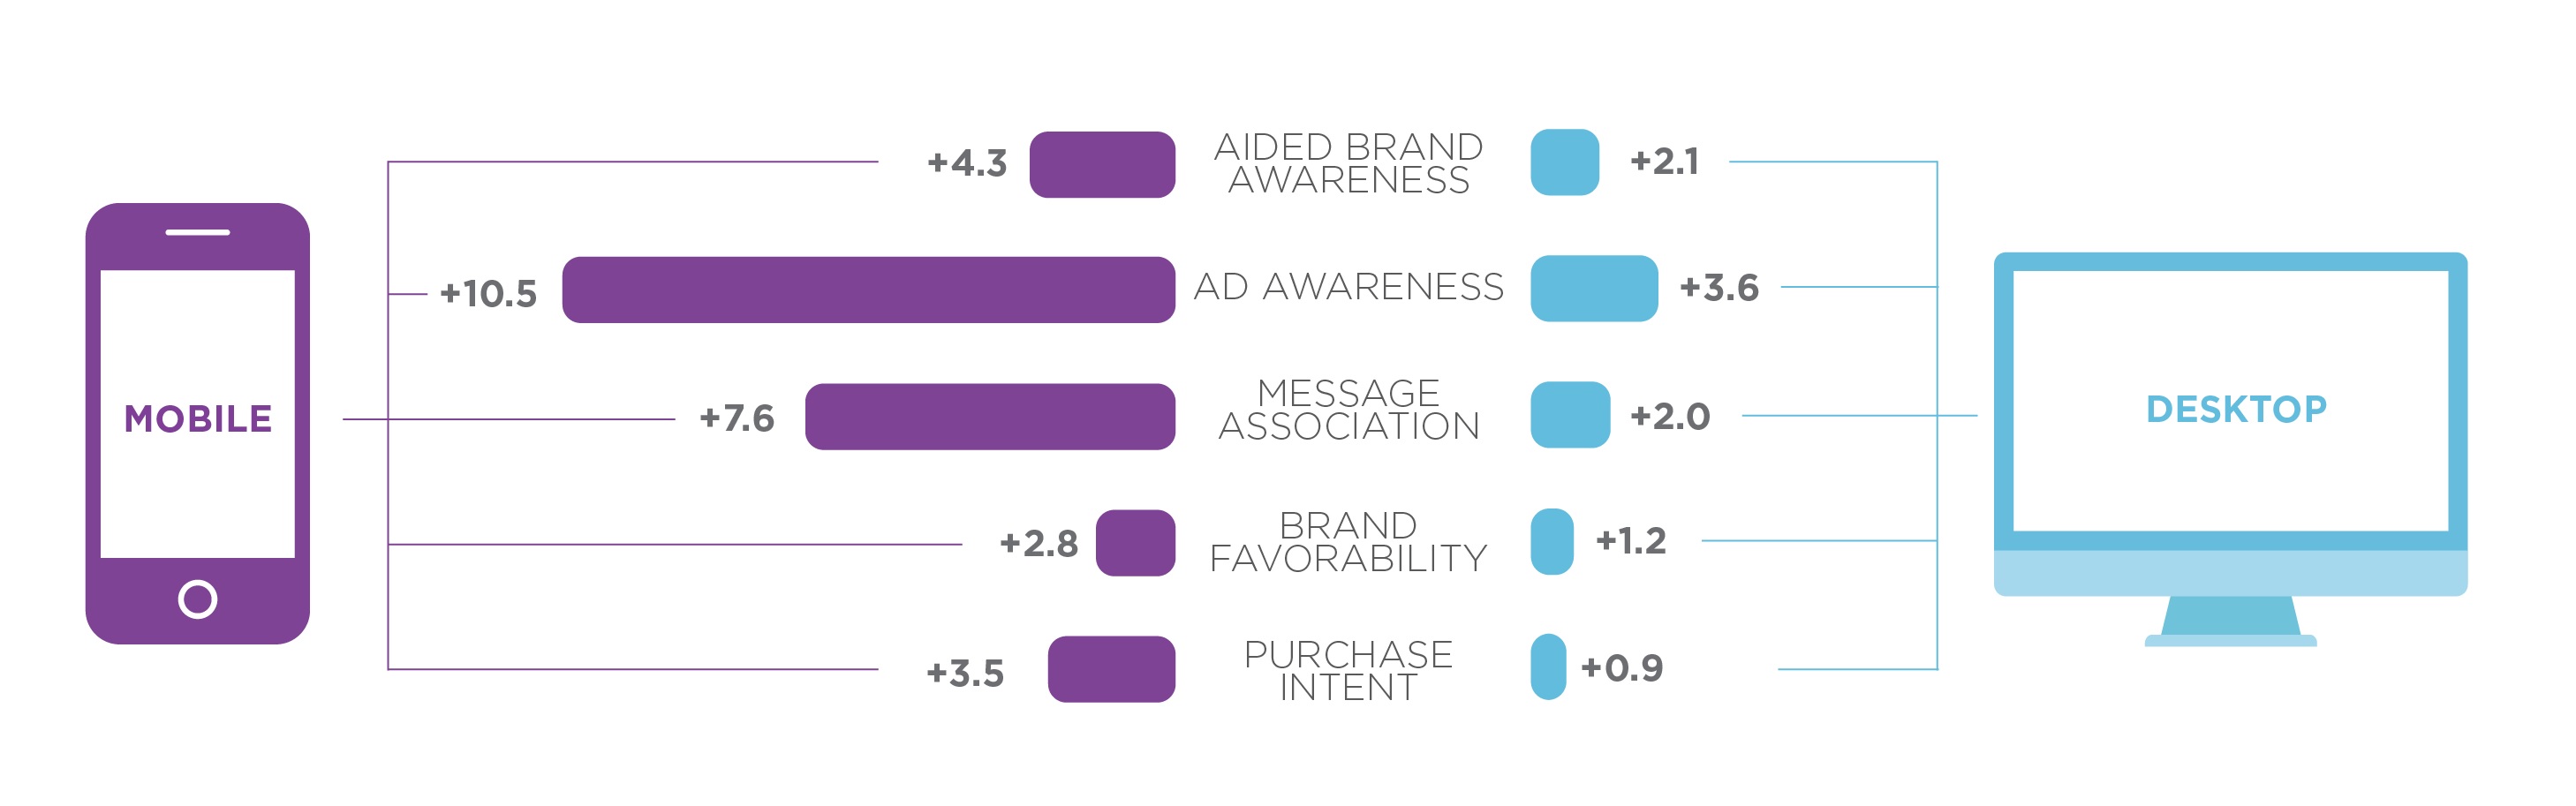 Сравнение эффективности мобильной и онлайновой рекламы по компонентам 